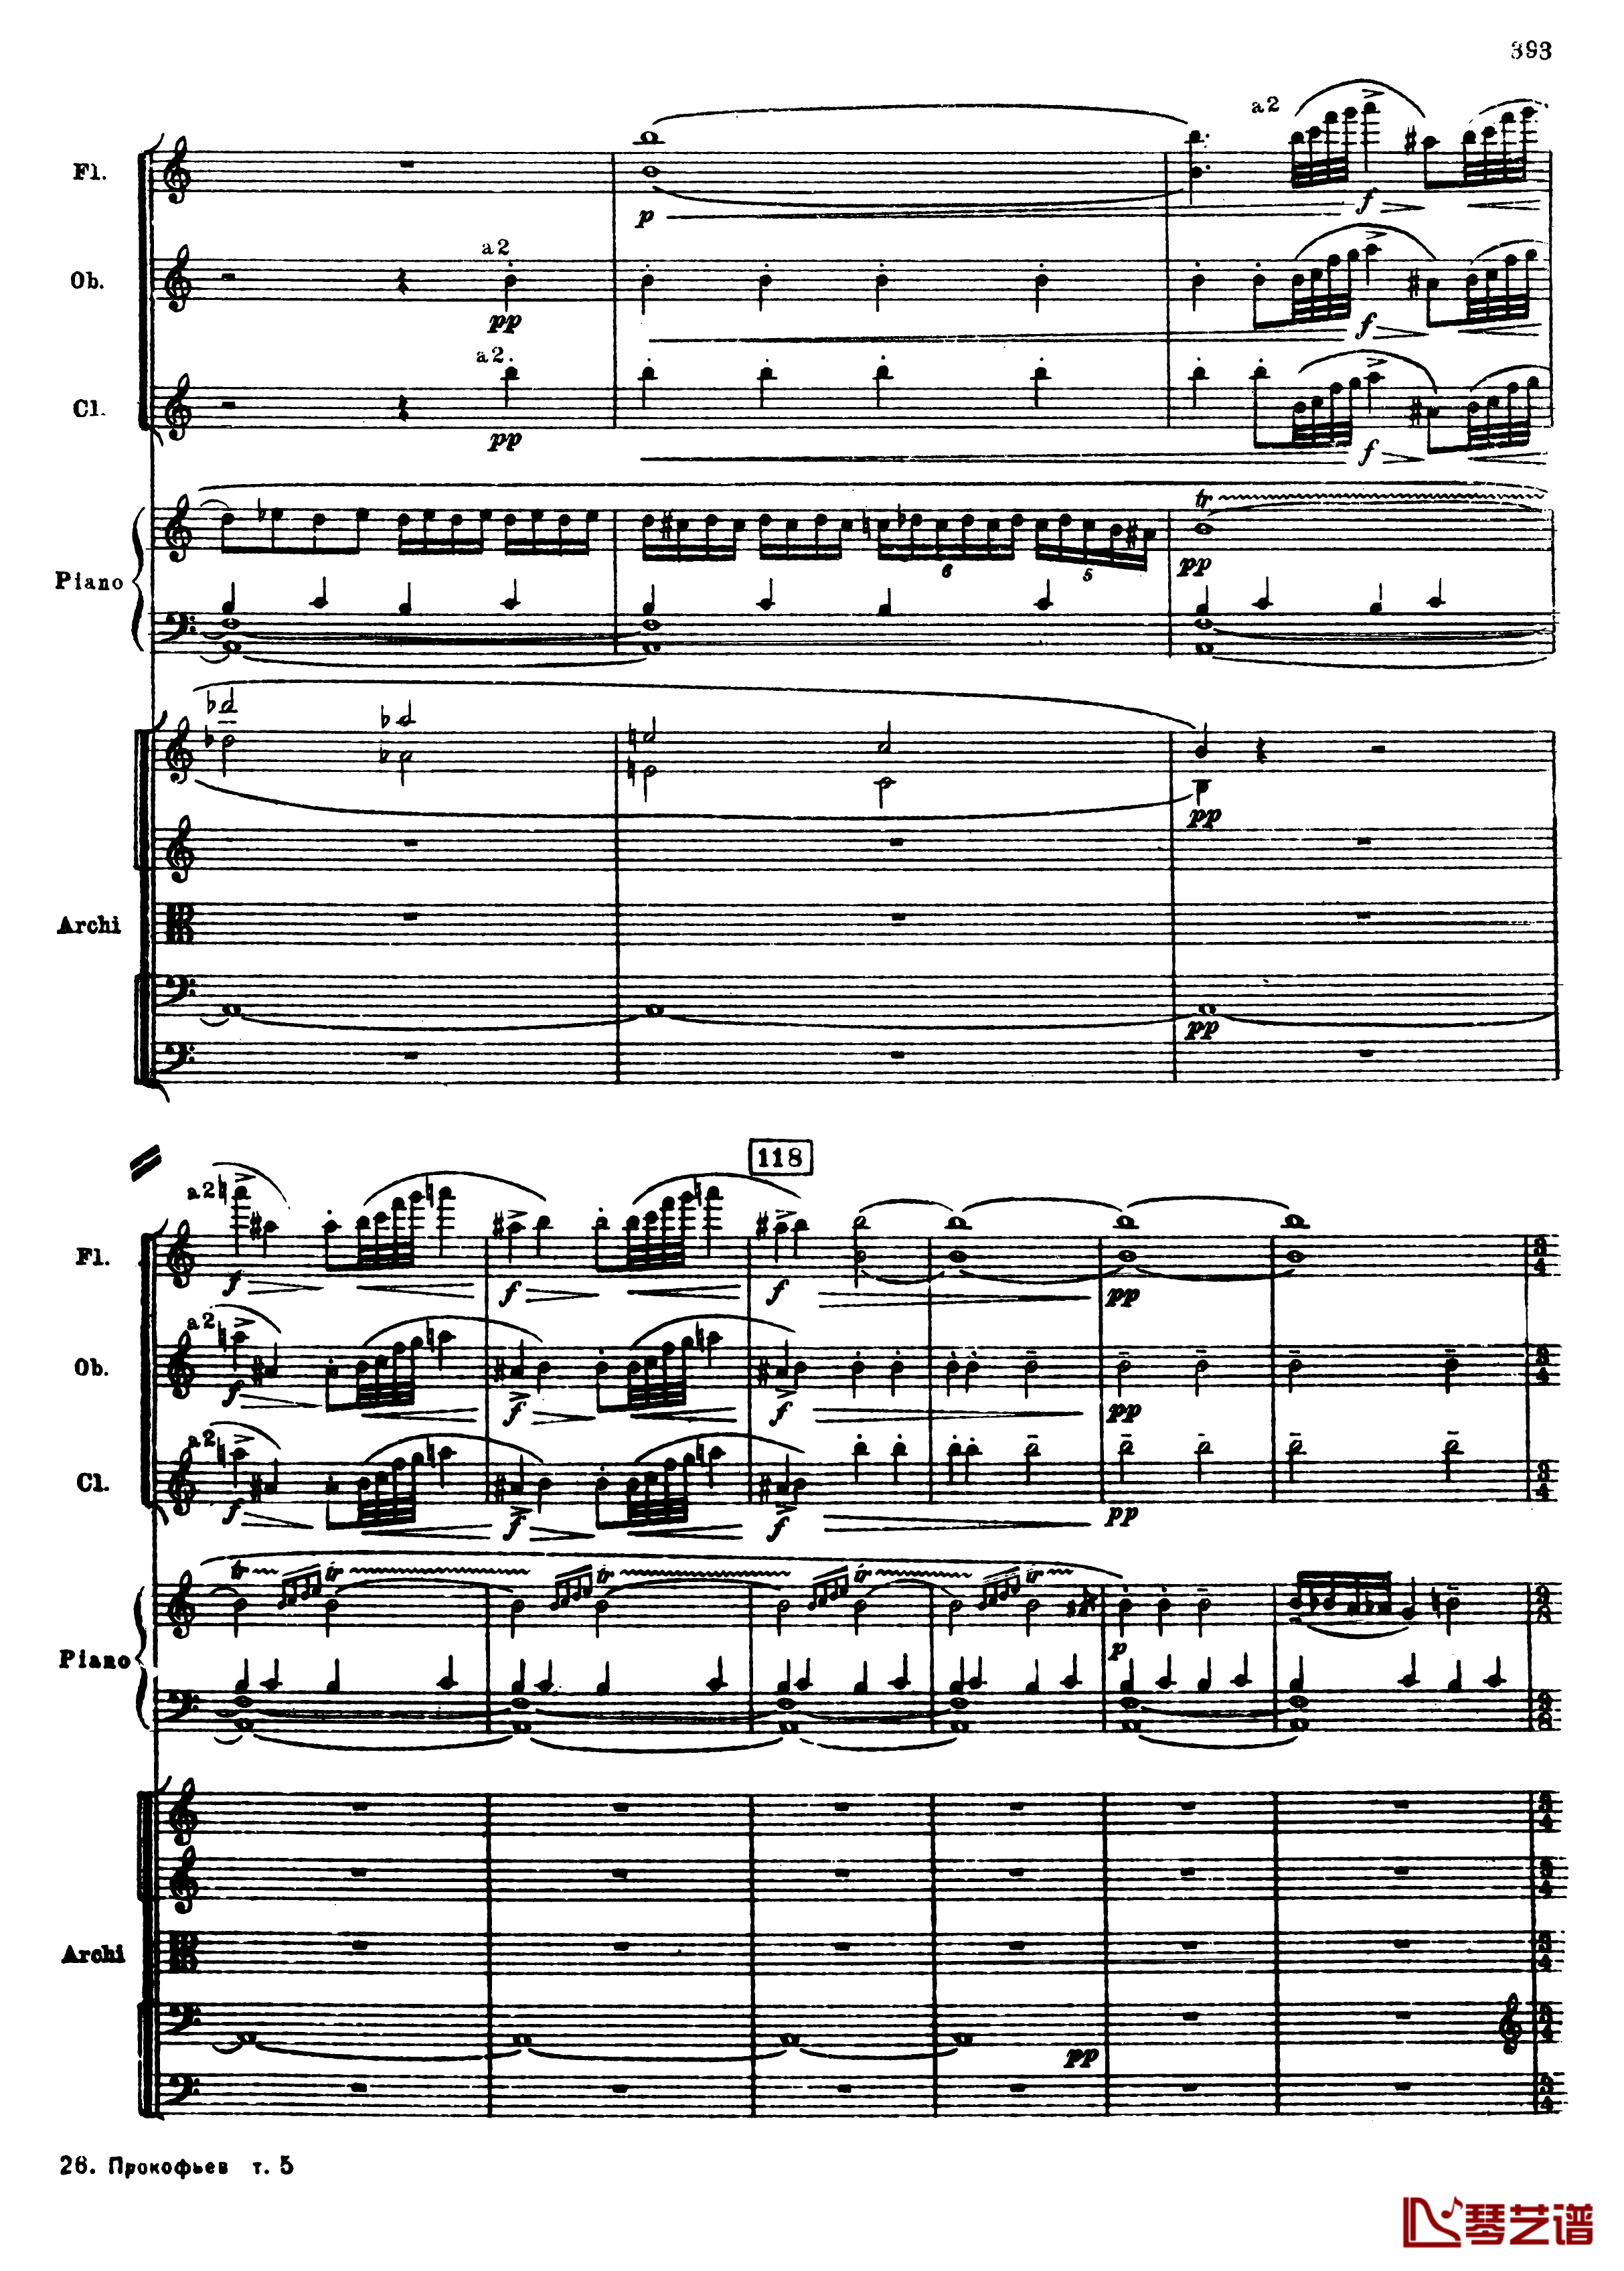 普罗科菲耶夫第三钢琴协奏曲钢琴谱-总谱-普罗科非耶夫125